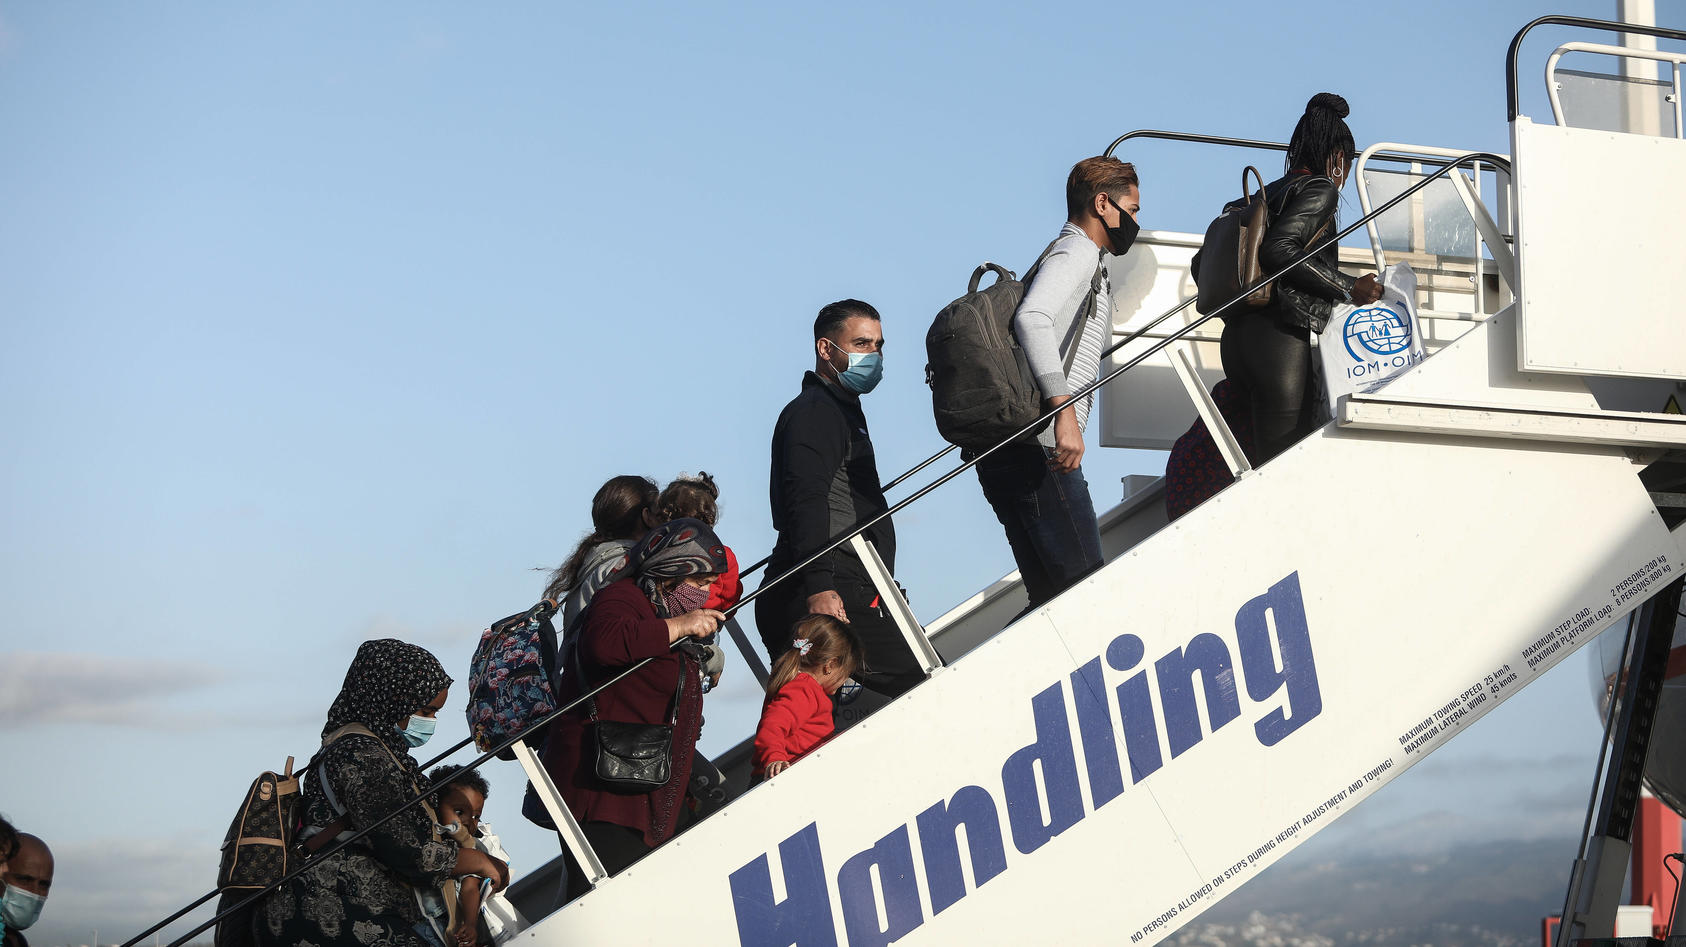  Abflug von 101 anerkannten Flüchtlingen nach Deutschland vom Flughafen in Athen im Rahmen der Umsiedlung von 1.553 Flüchtlingen und Einwanderern aus dem ehemaligen Aufnahme- und Identifikationszentrum Moria auf der griechischen Insel Lesbos am Freit